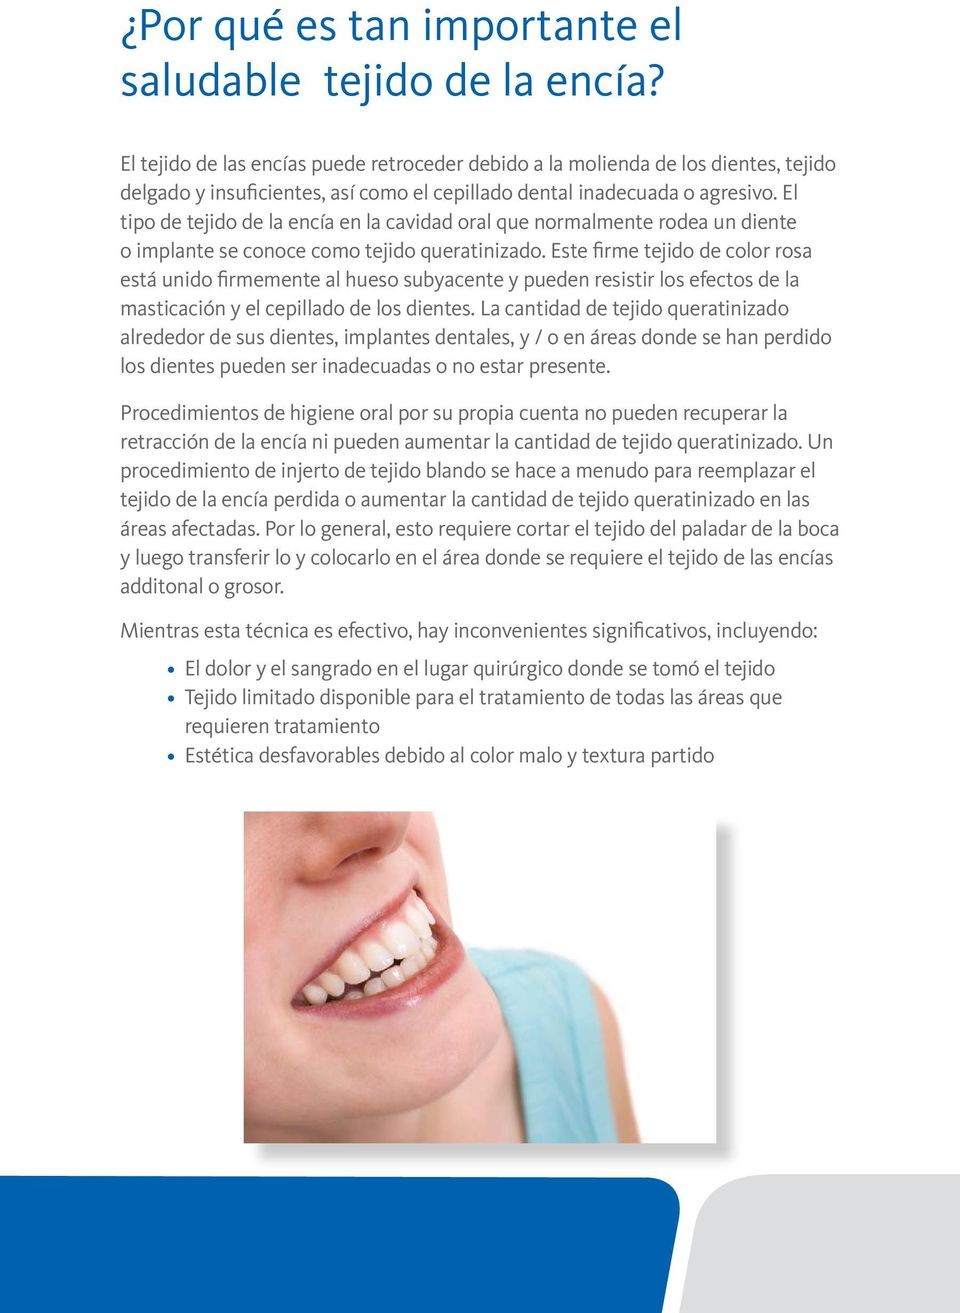 El tipo de tejido de la encía en la cavidad oral que normalmente rodea un diente o implante se conoce como tejido queratinizado.